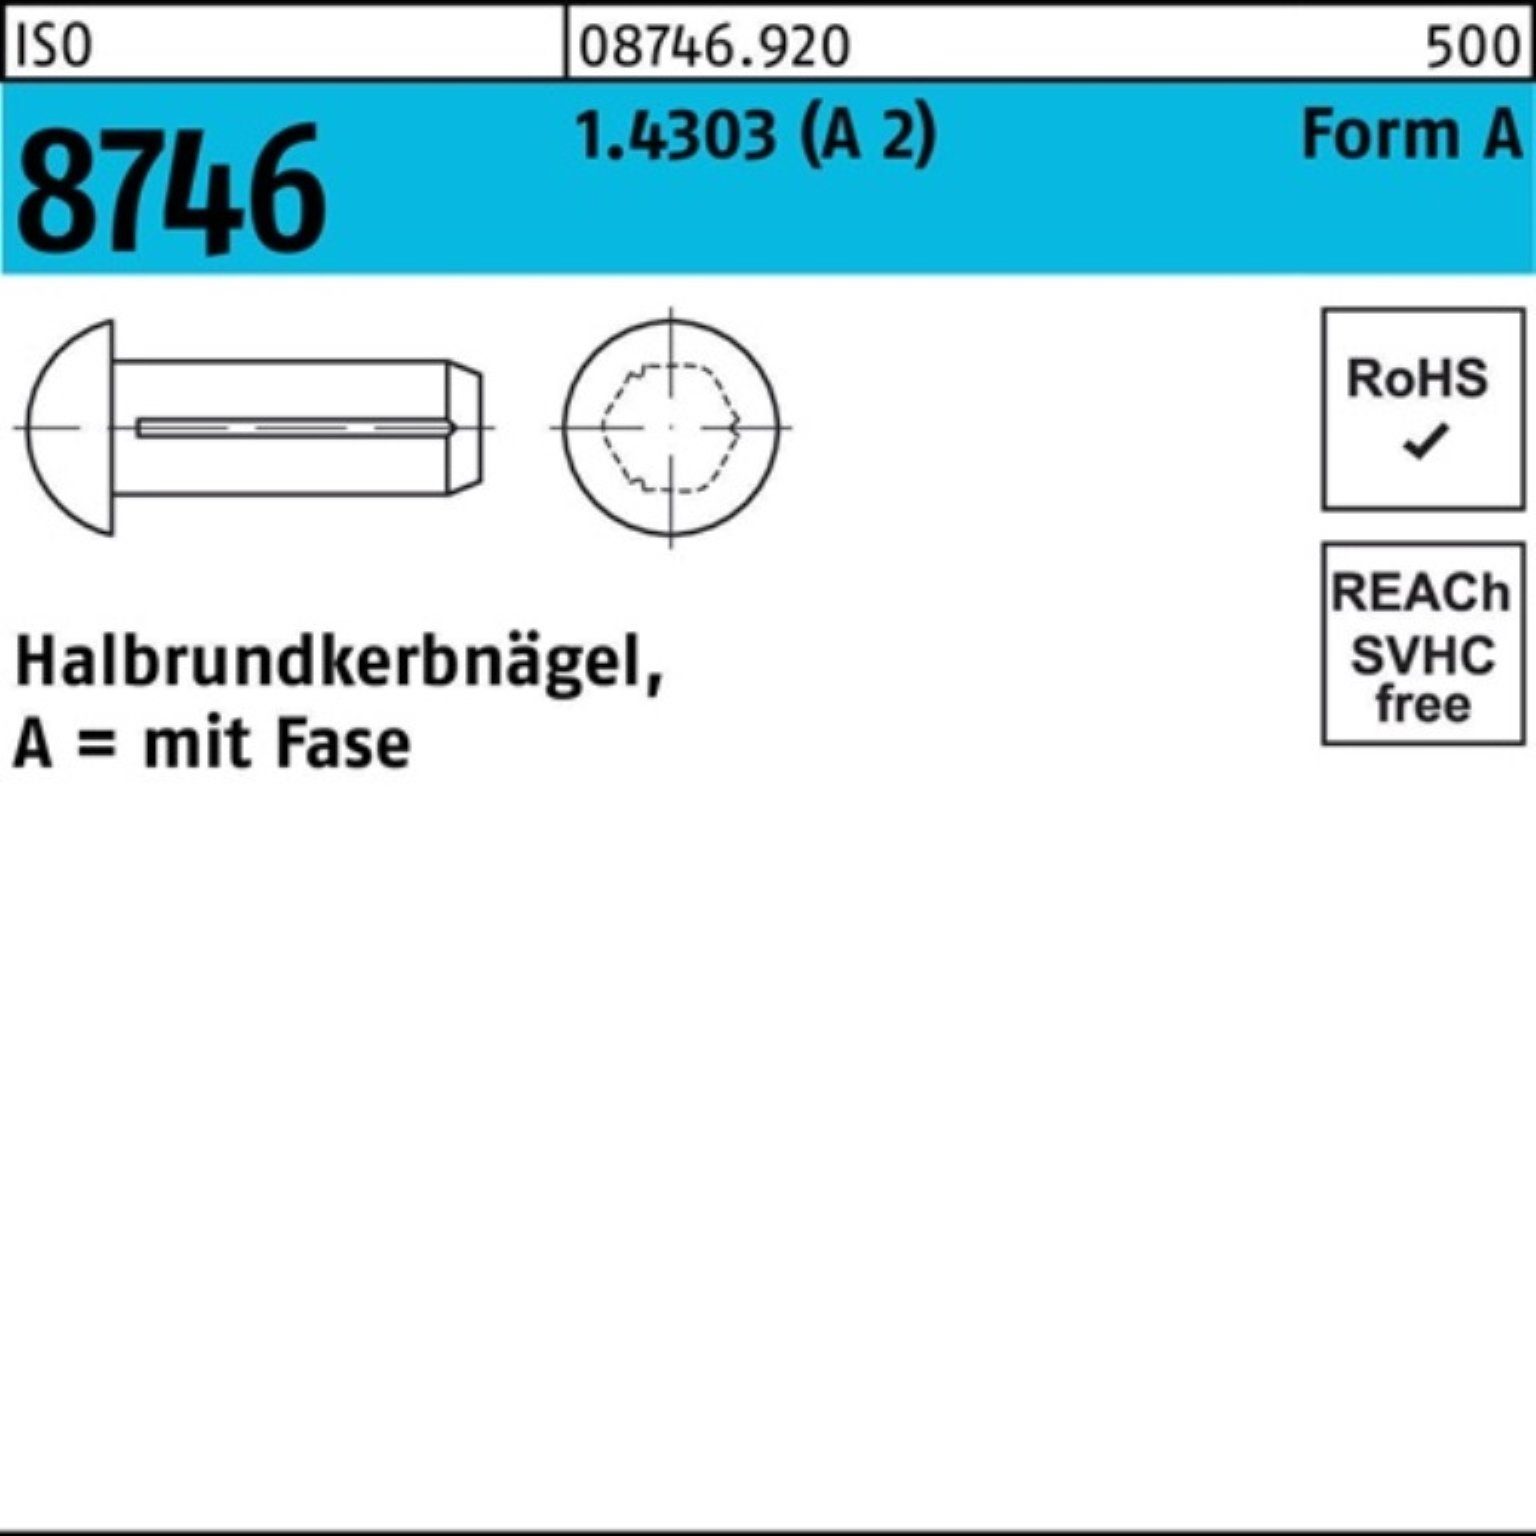 Pack Halbrundkerbnagel 4 8746 2) Nagel 100 3x Fase 1.4303 Reyher ISO Stüc (A 100er